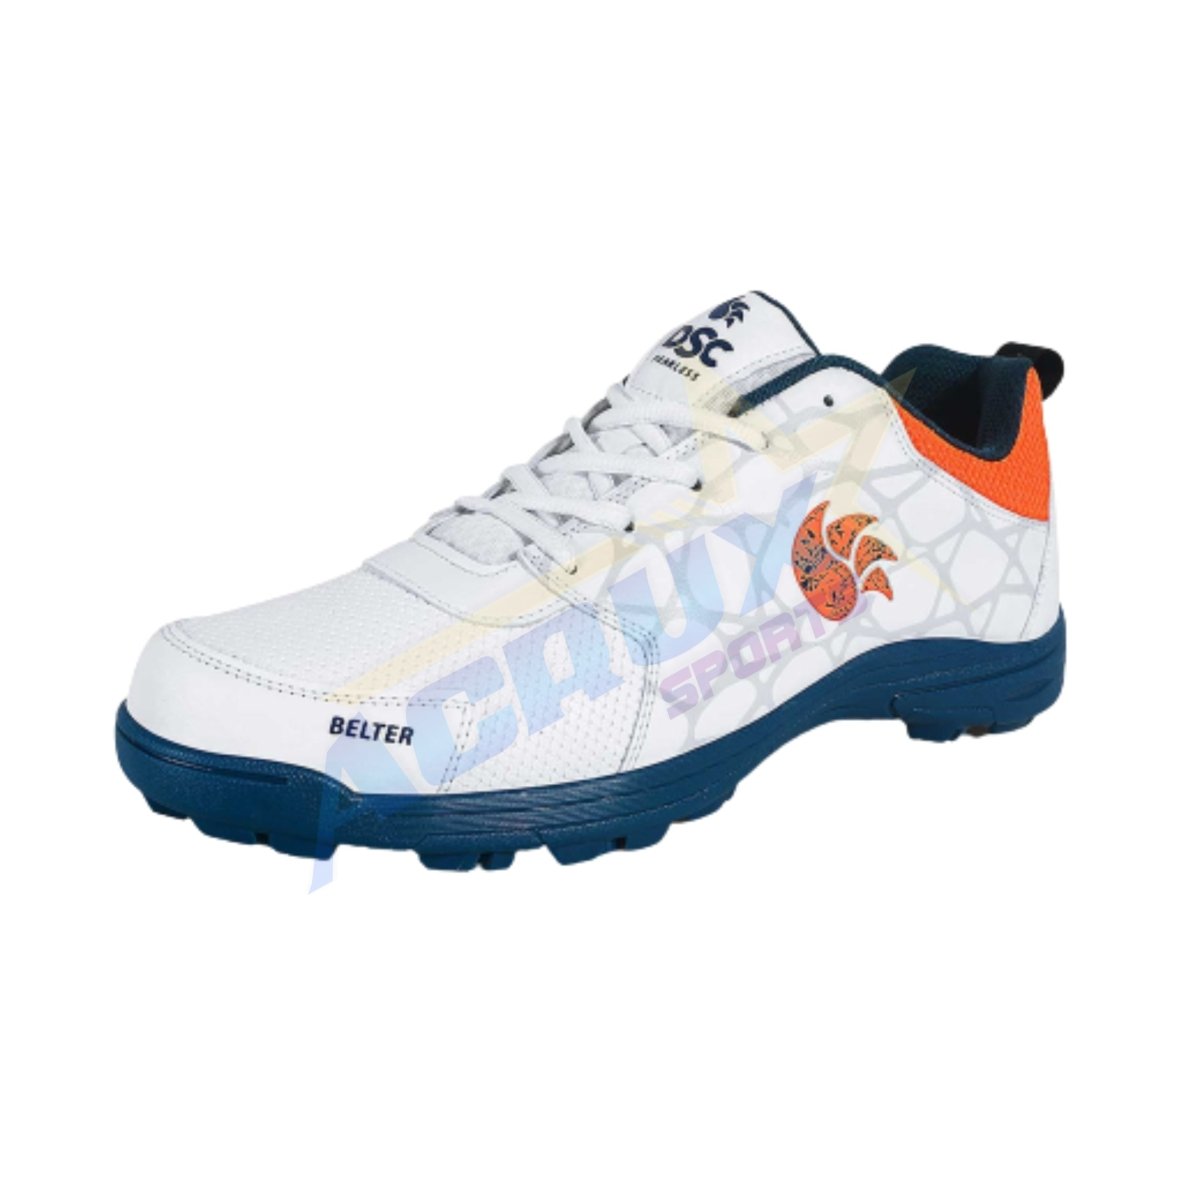 DSC Belter Cricket Shoes - Acrux Sports